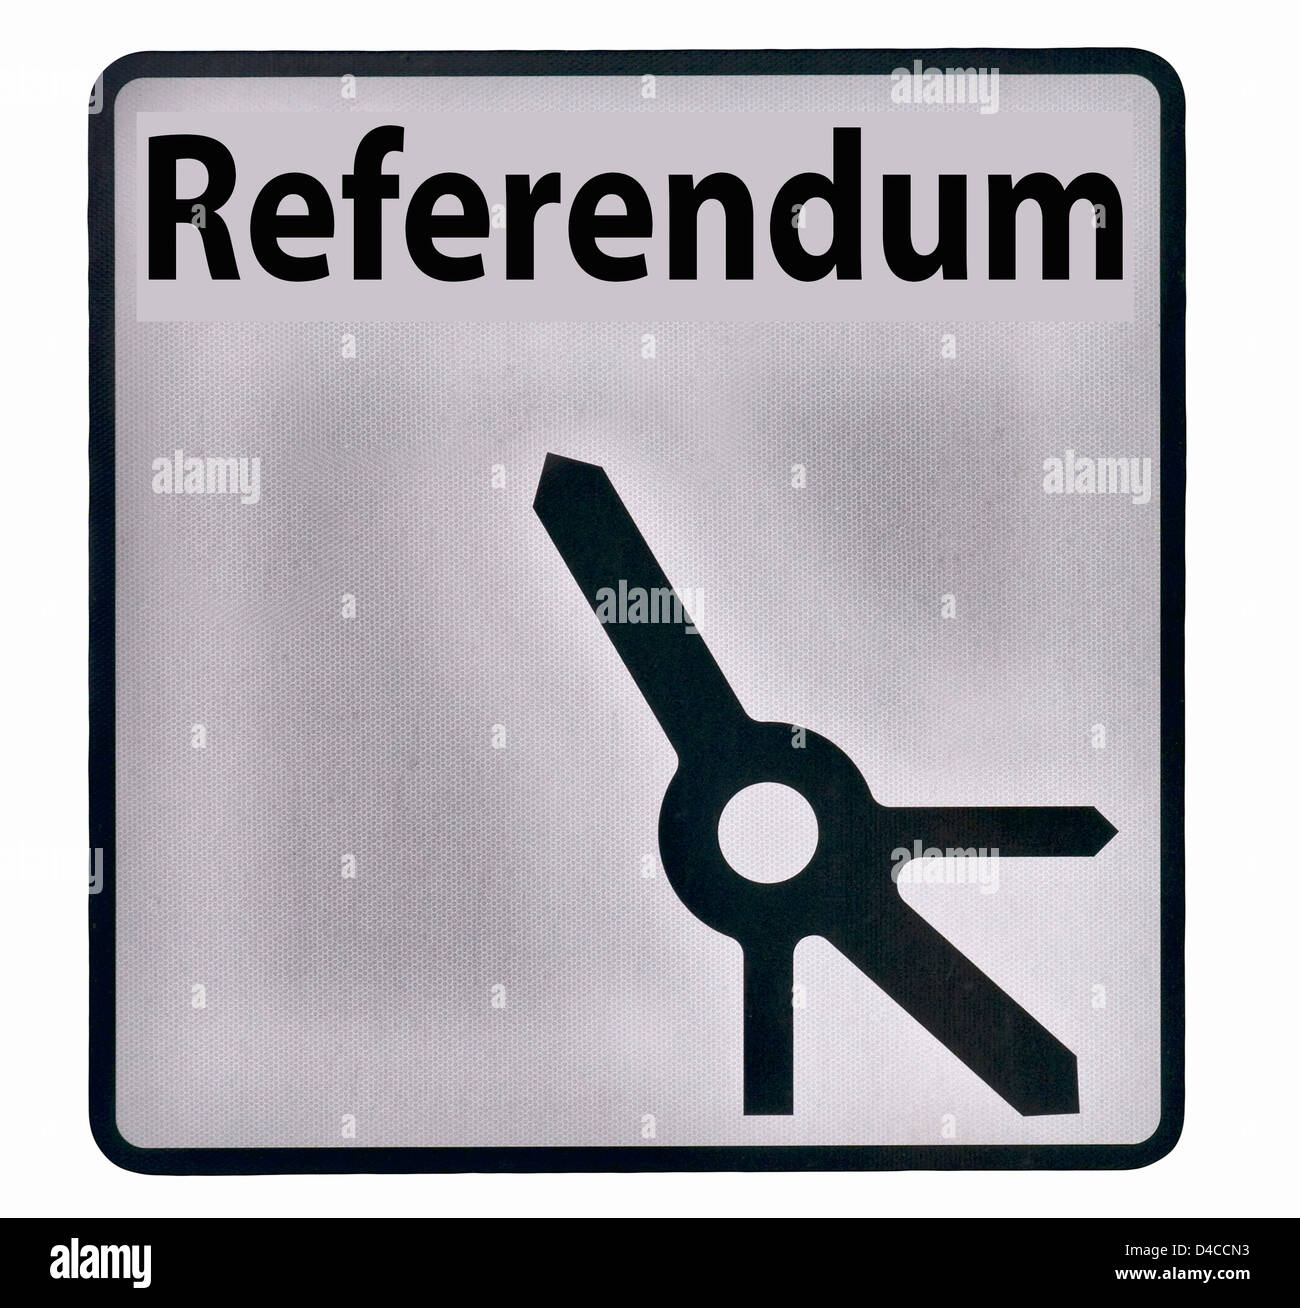 Le référendum, vote oui non (comprend le rond-point en détail) Banque D'Images